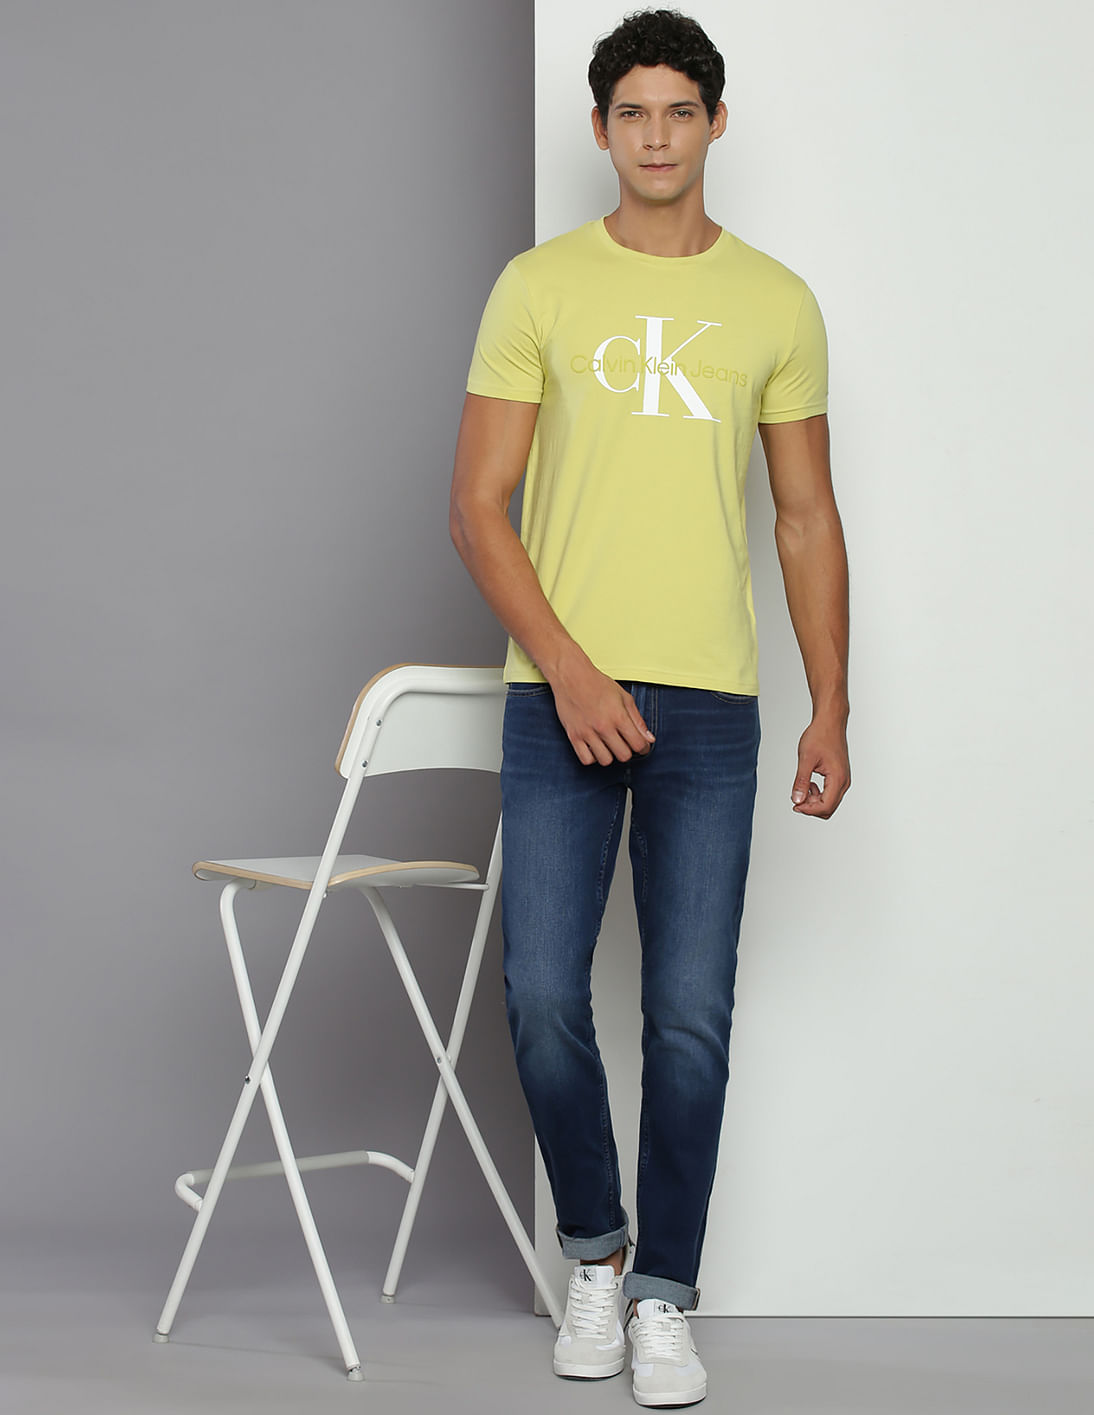 Calvin Klein Jeans Seasonal Monologo T-Shirt - Tan